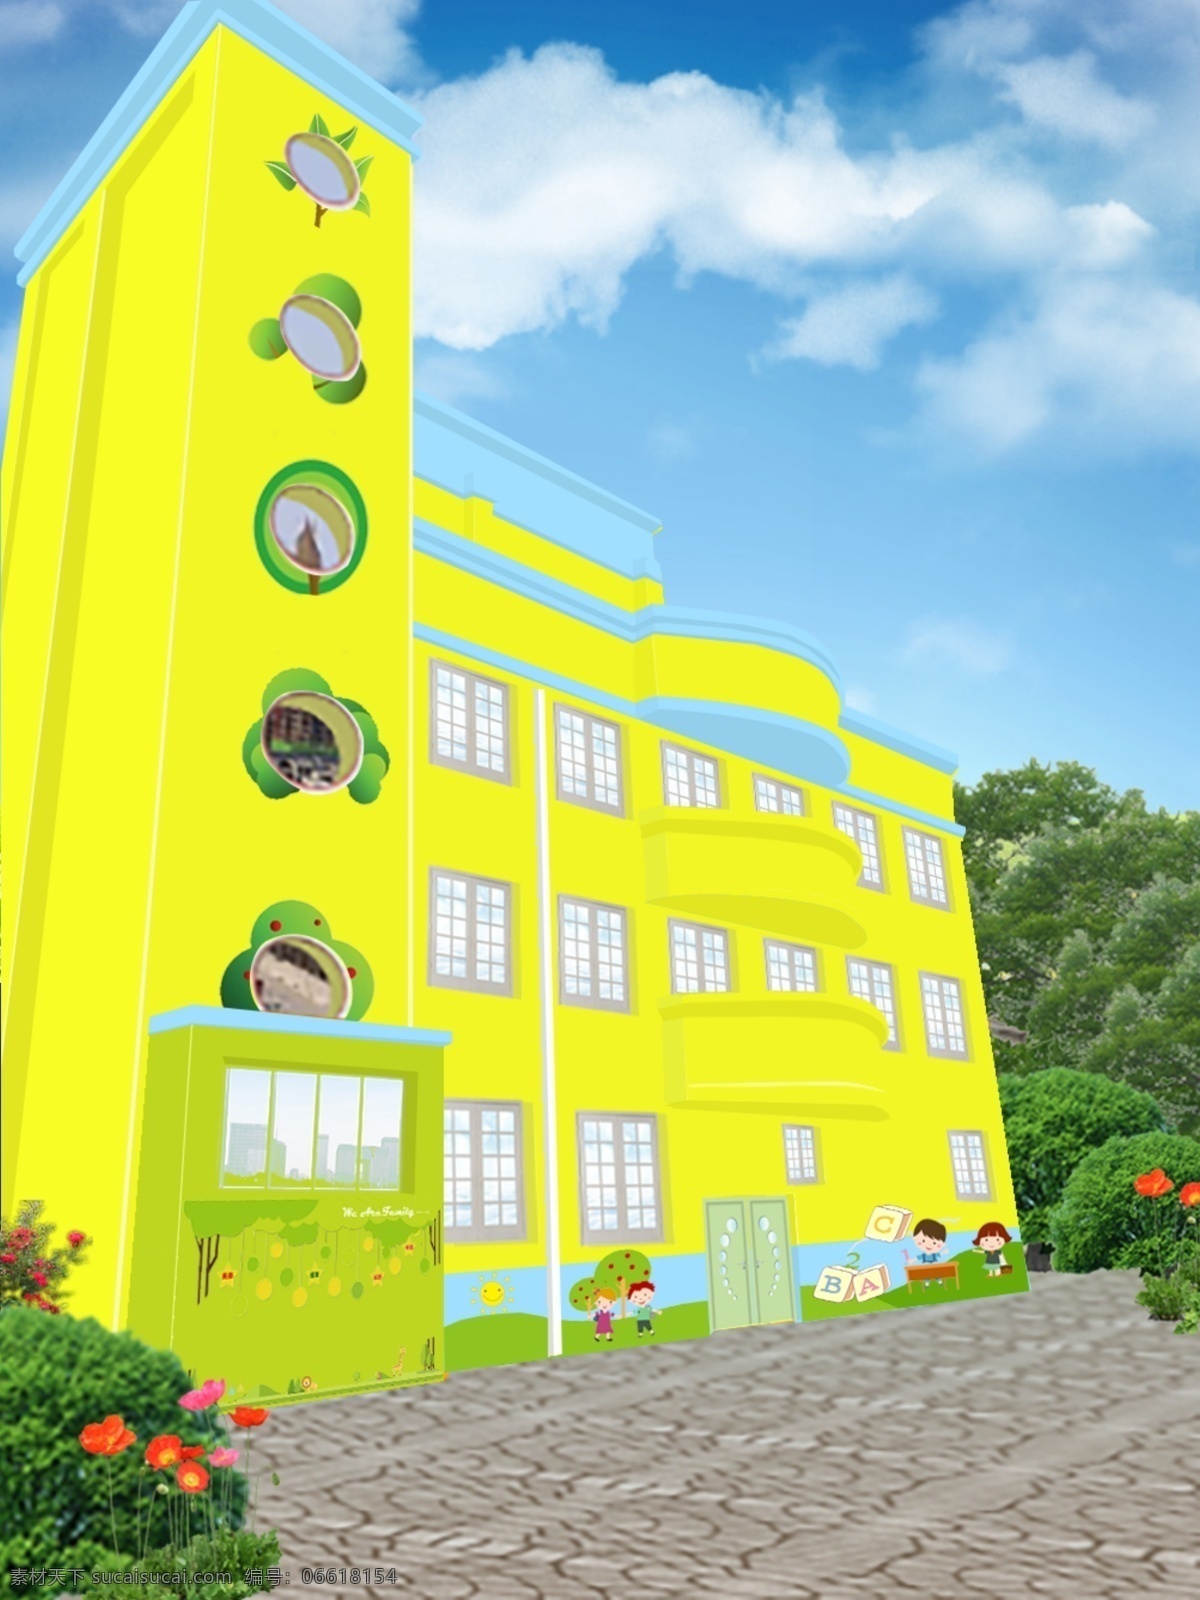 幼儿园 教学楼 外观 幼儿园墙 幼儿园装饰 教学楼墙 幼儿园教学楼 环境设计 效果图